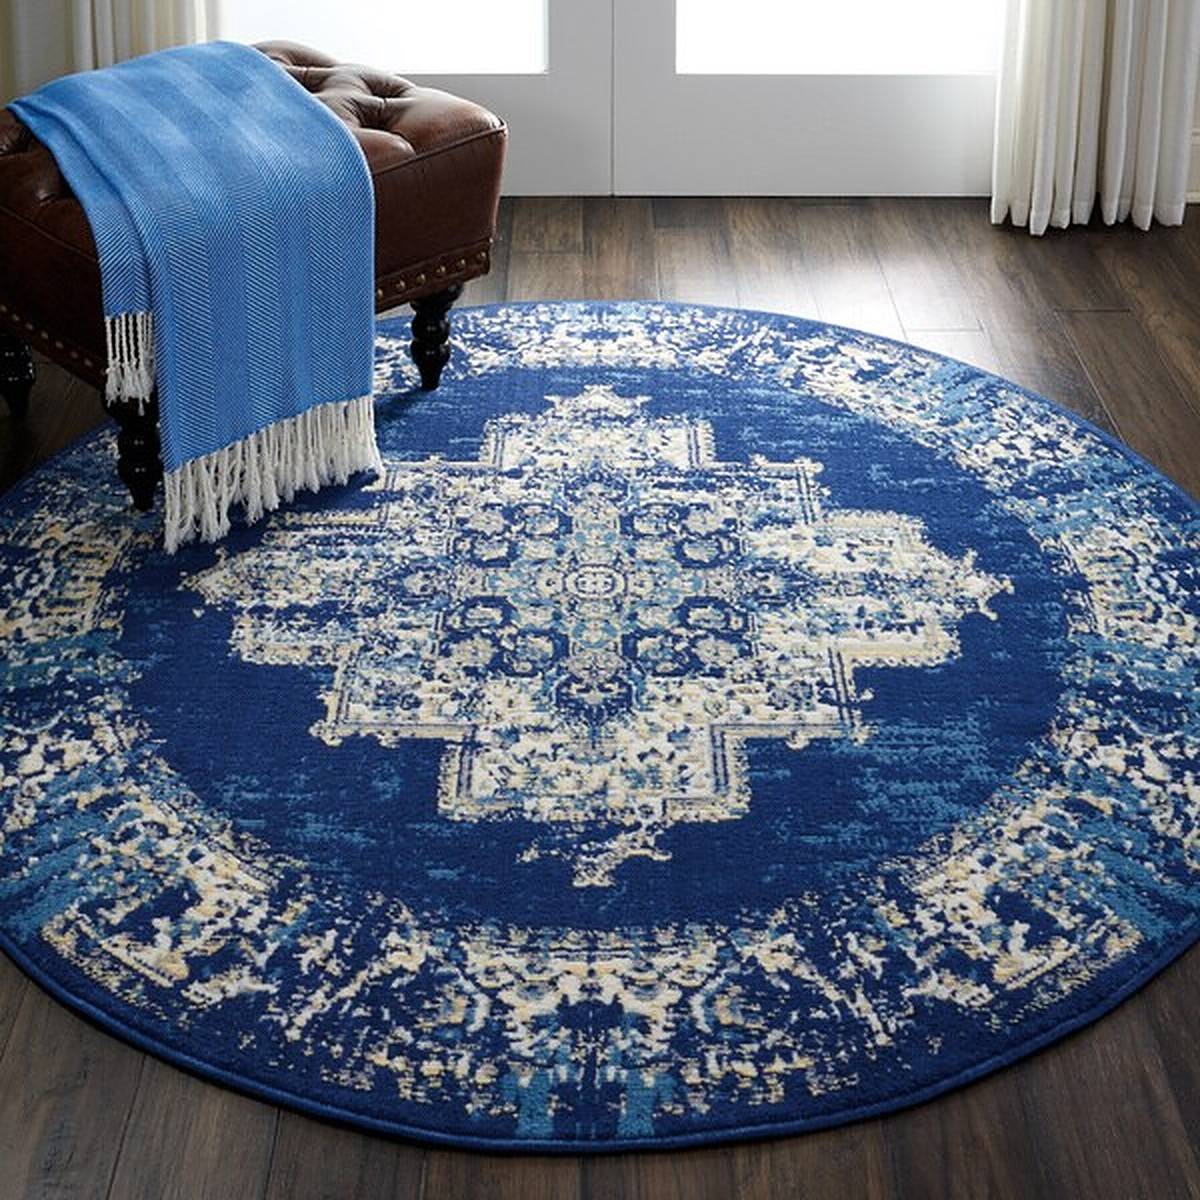 Round blue bohemian rug in doorway